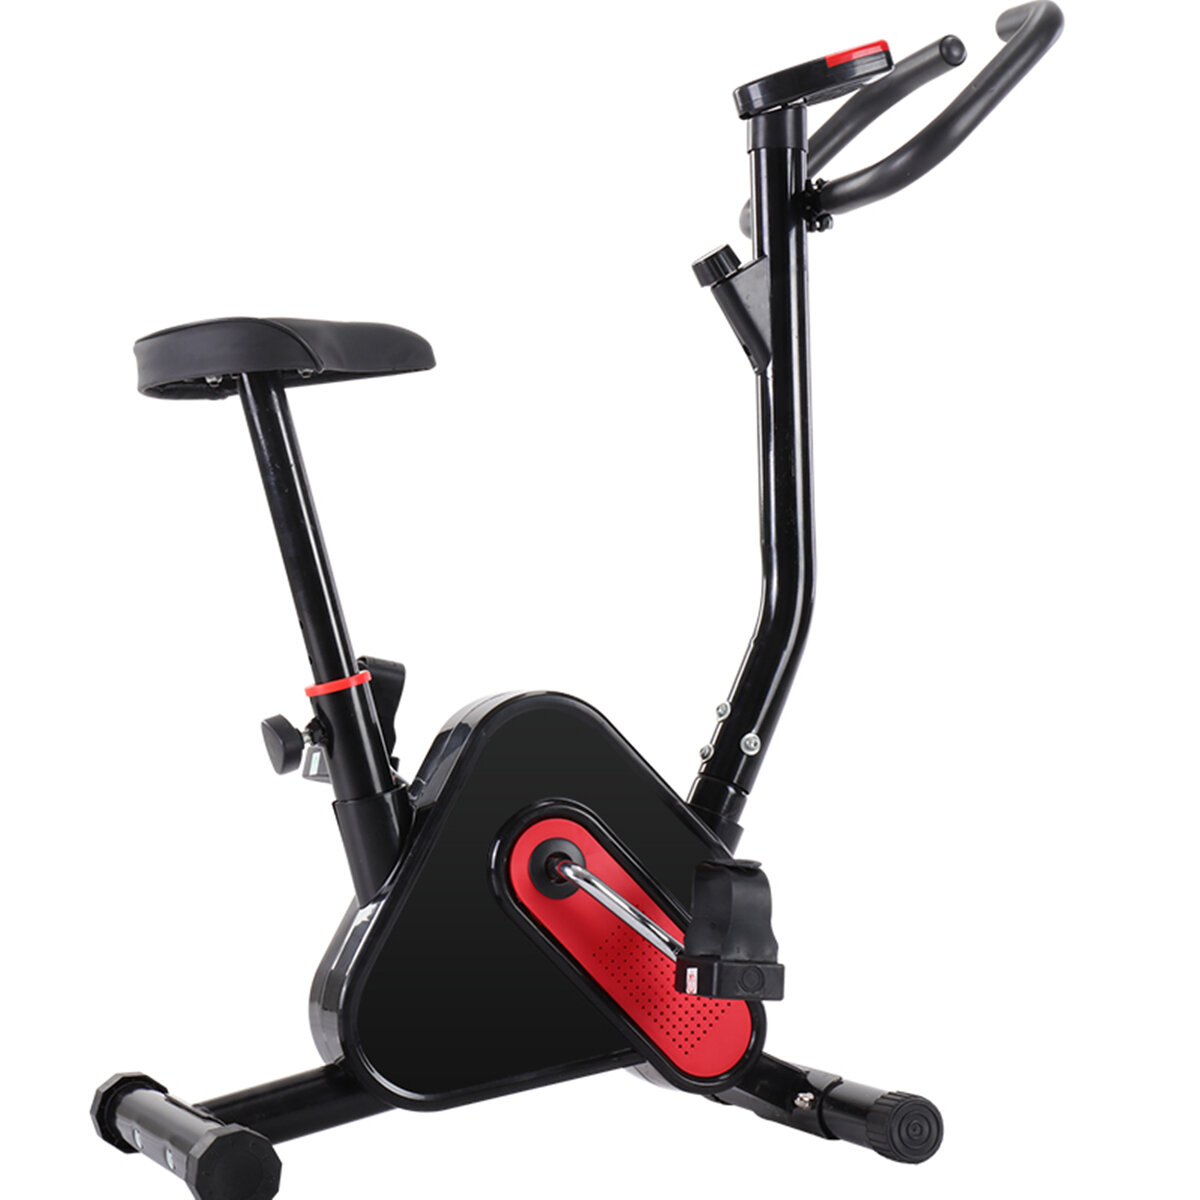 Στα 68.20 € από αποθήκη Τσεχίας | LCD Adjustable Exercise Bike Cardio Trainer Bicycle Fitness Home Sport Gym Cycling Max Load 120kg